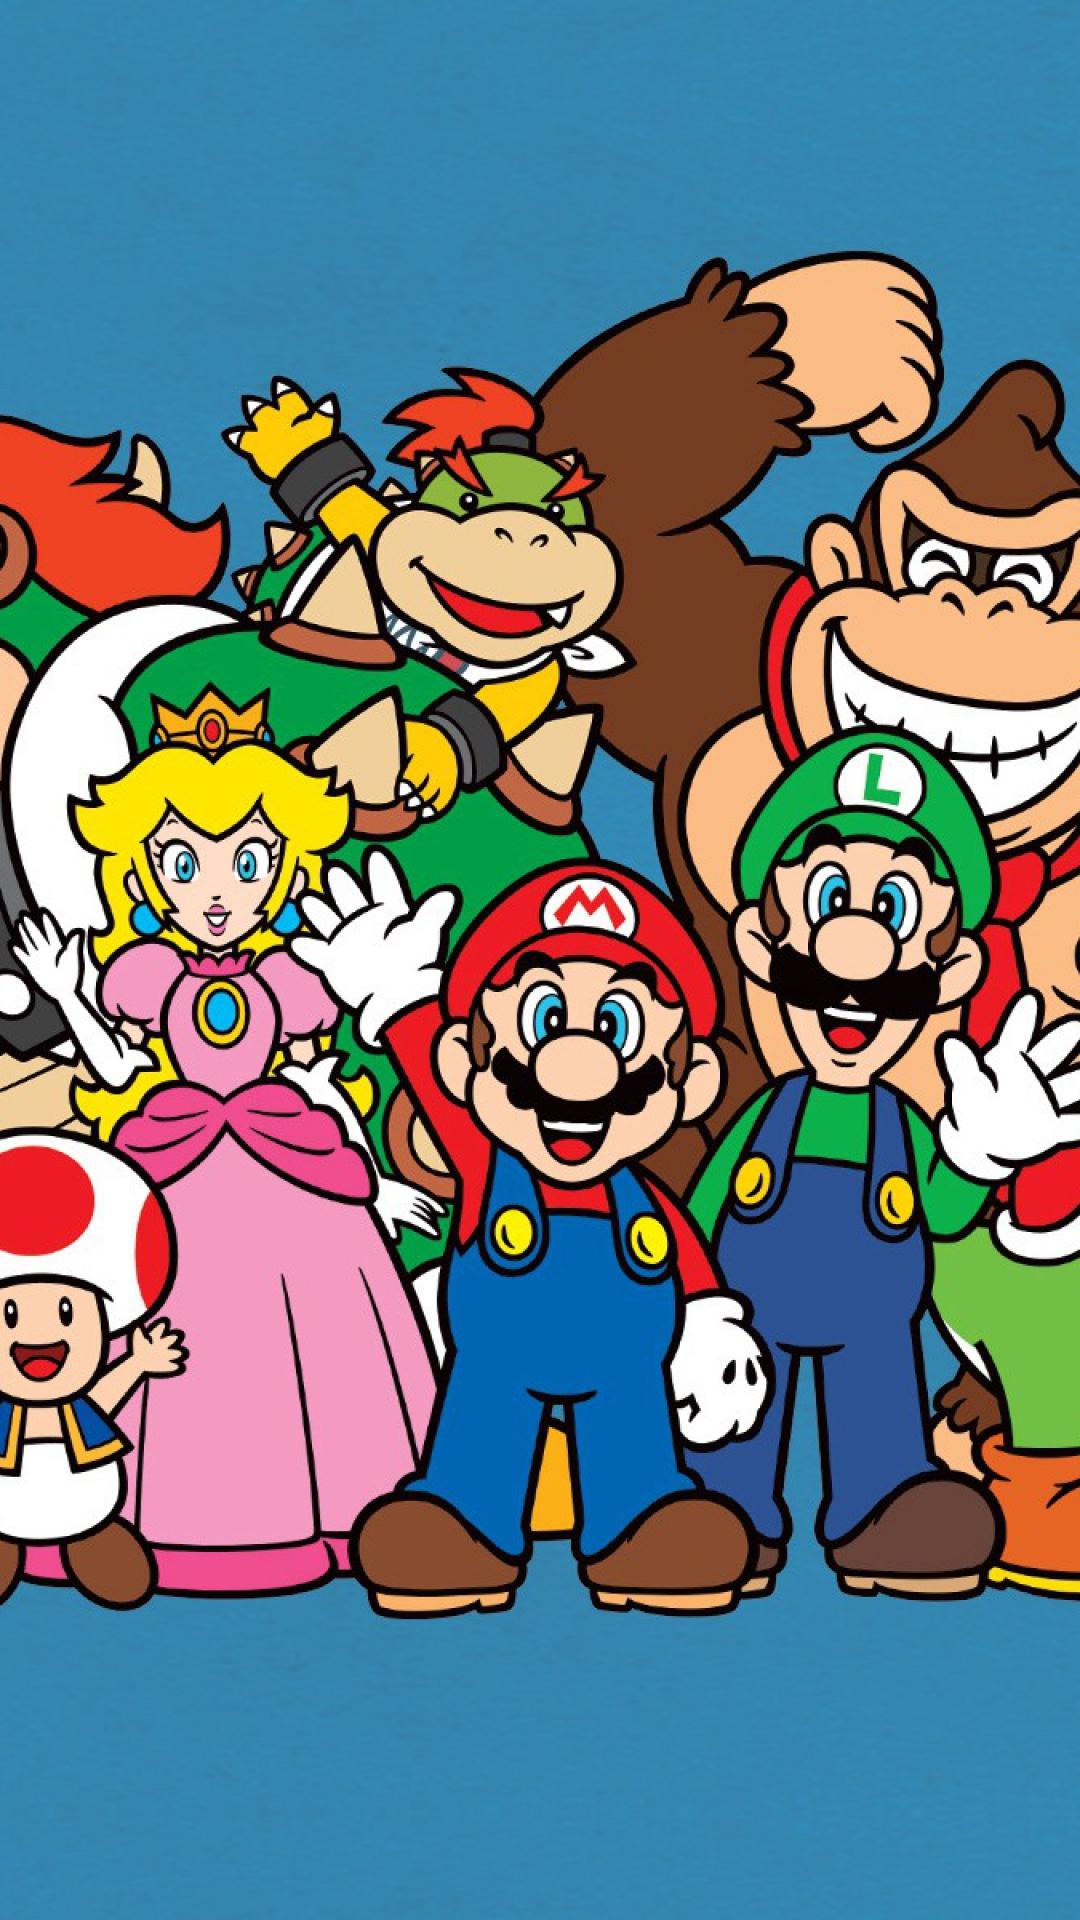 Female Mario and Luigi Wallpaper